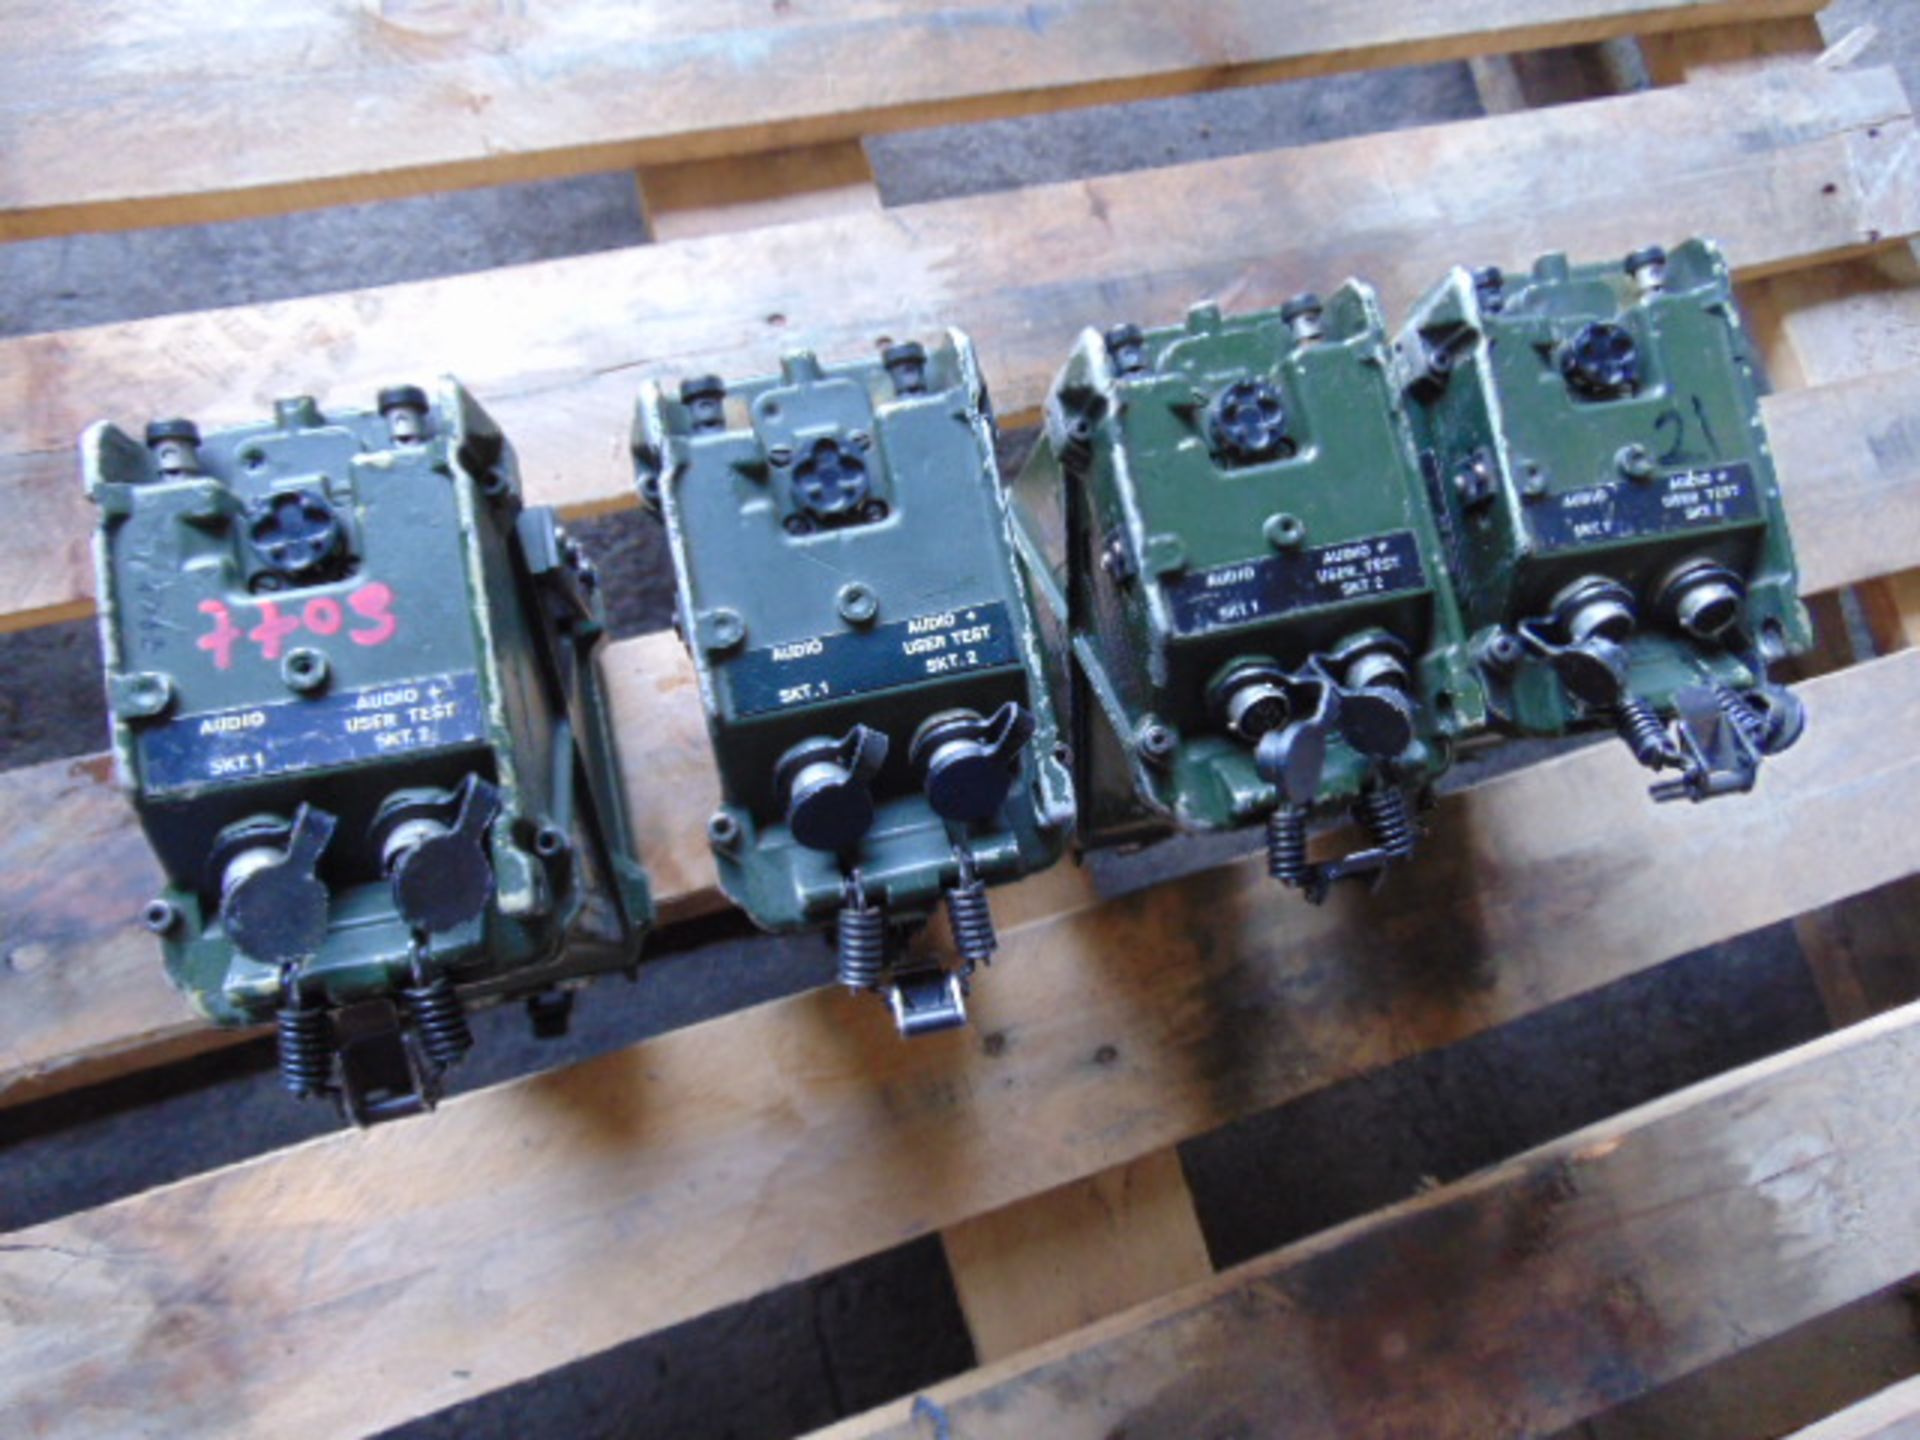 4 x Clansman RT- 351 Transmitter Receivers - Image 5 of 9